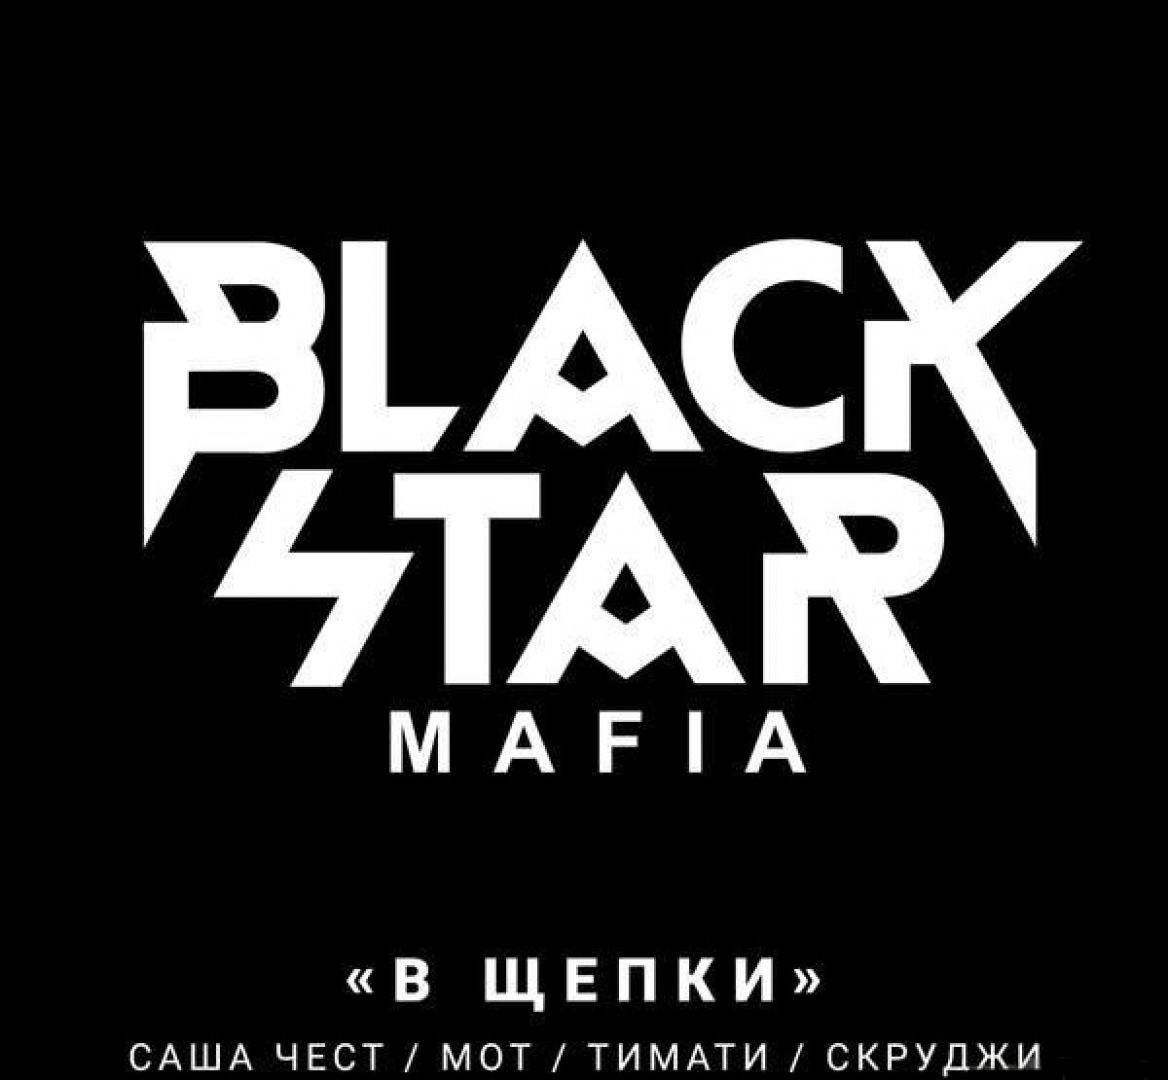 Black Star Mafia представили клип на трек «В щепки» - Музыка Первого